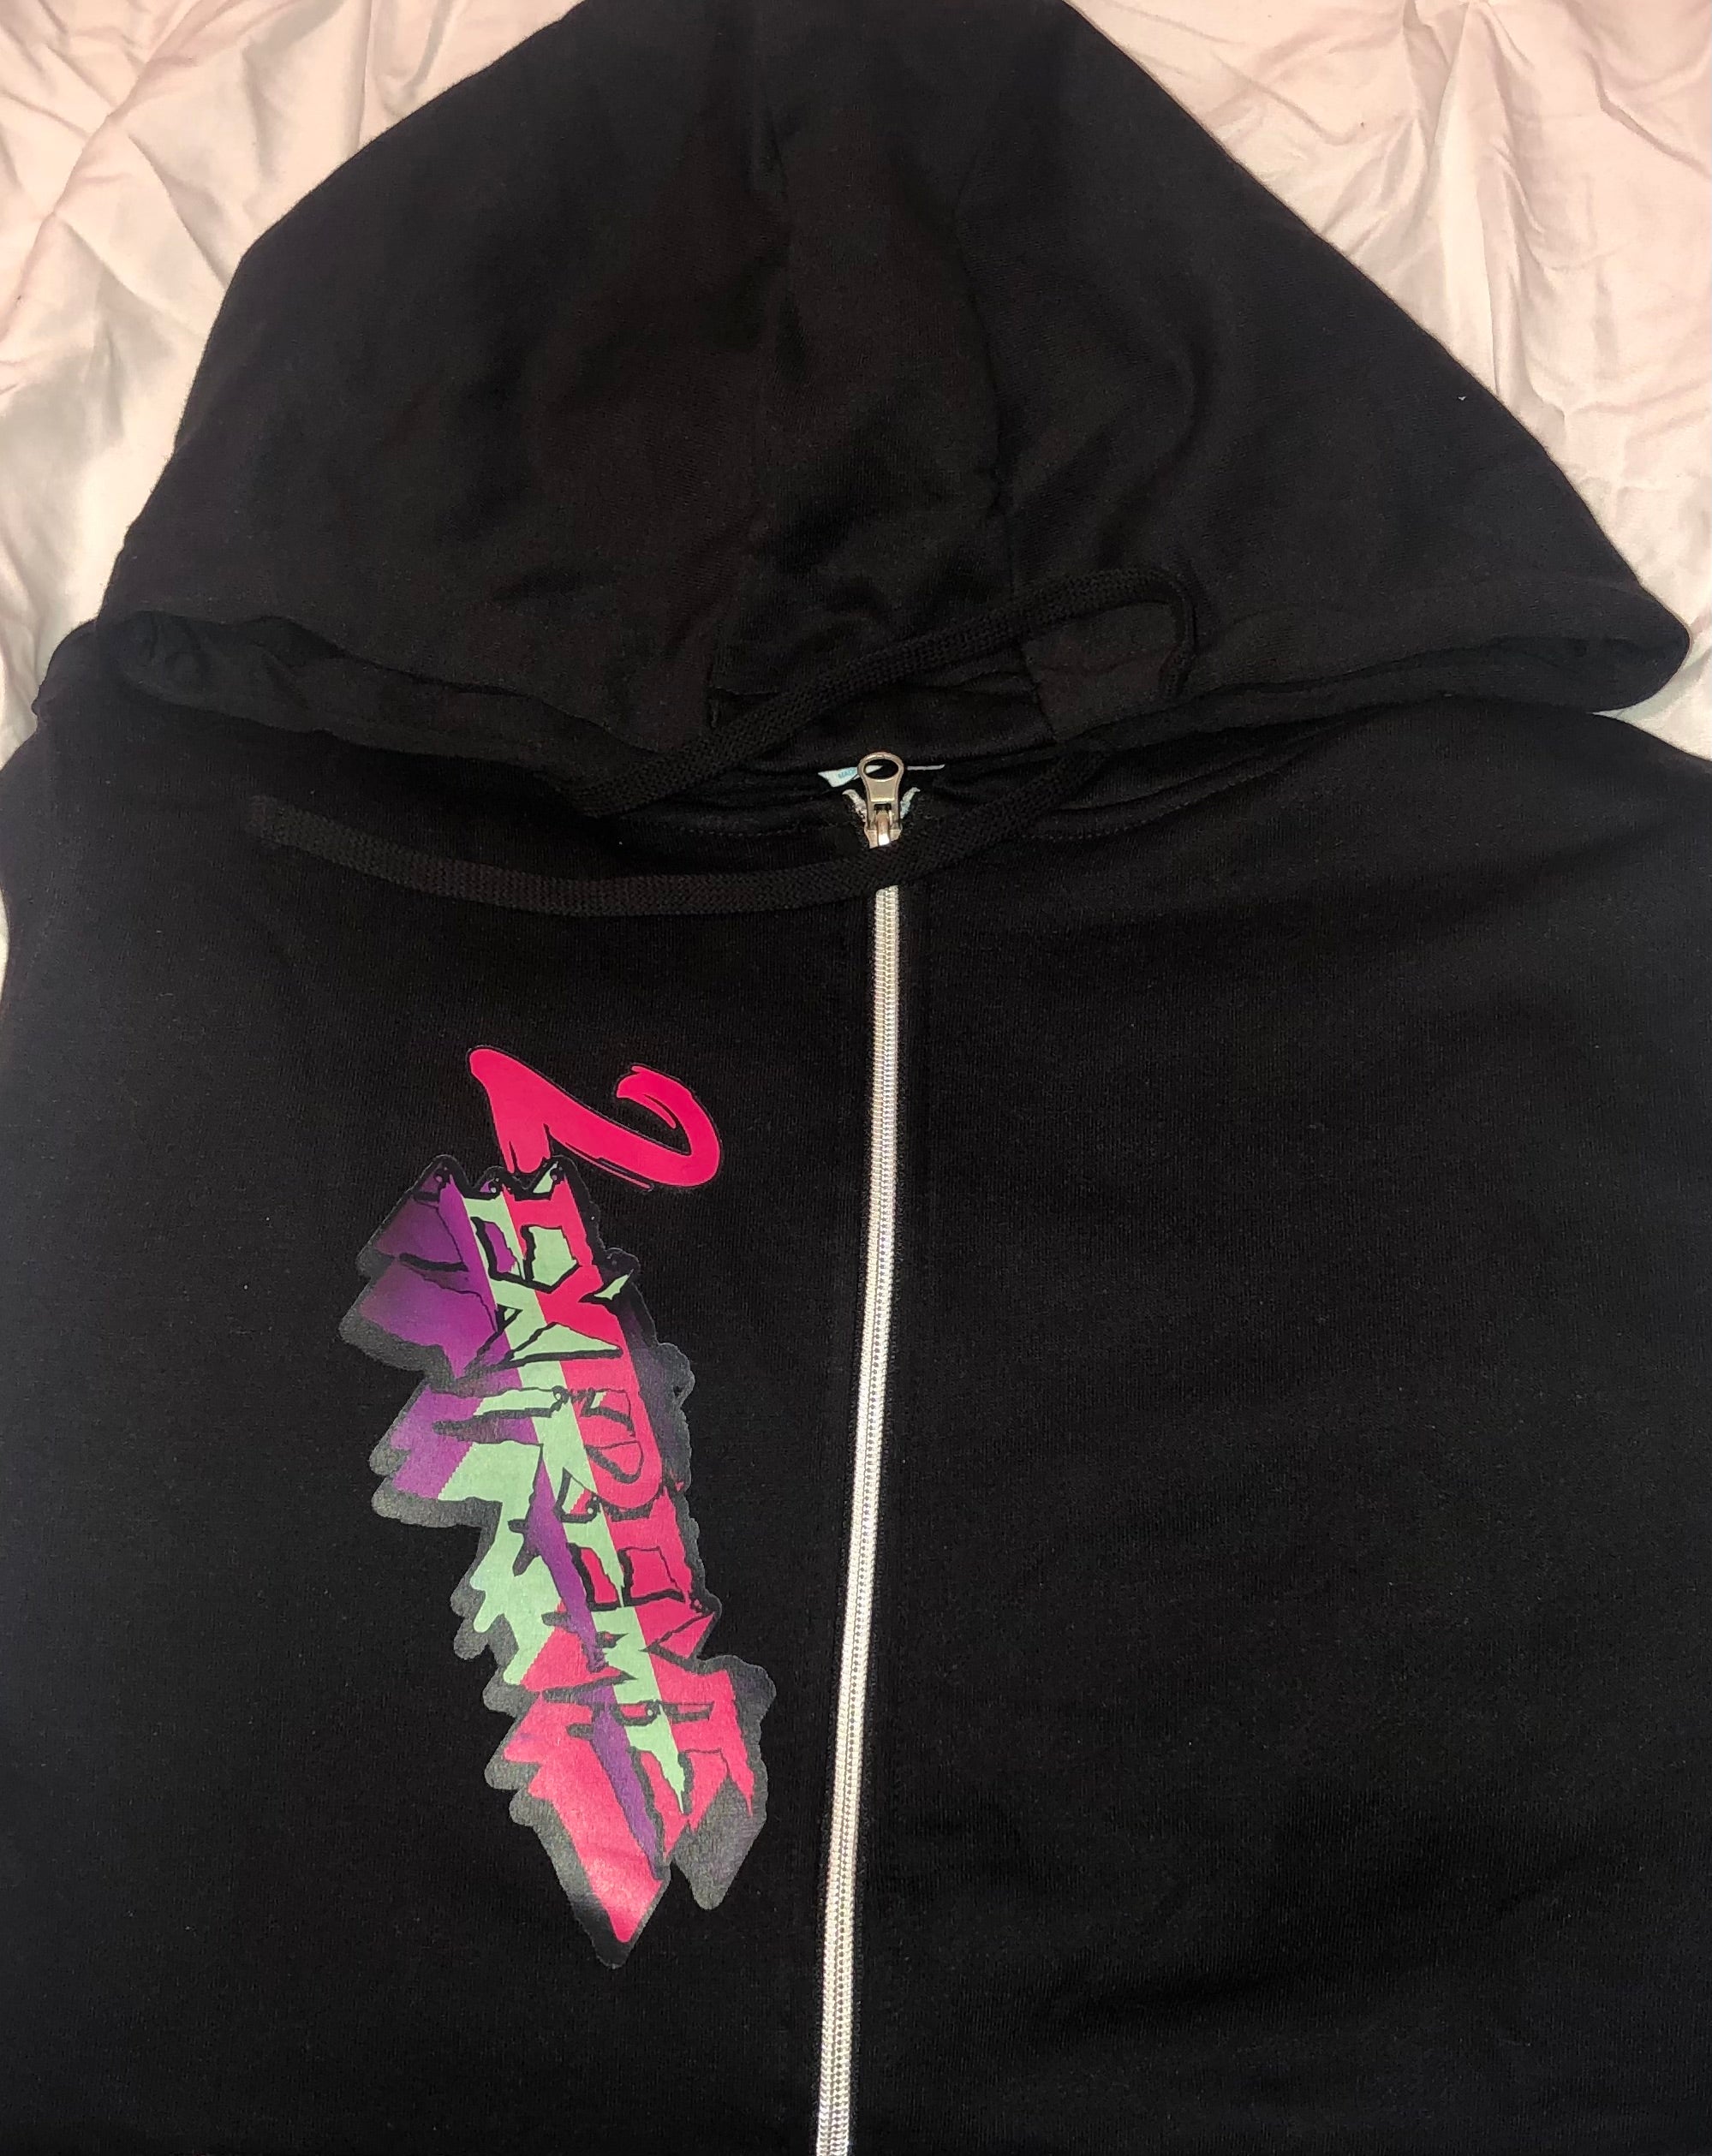 2EXTREME Black Zip-up hoodie